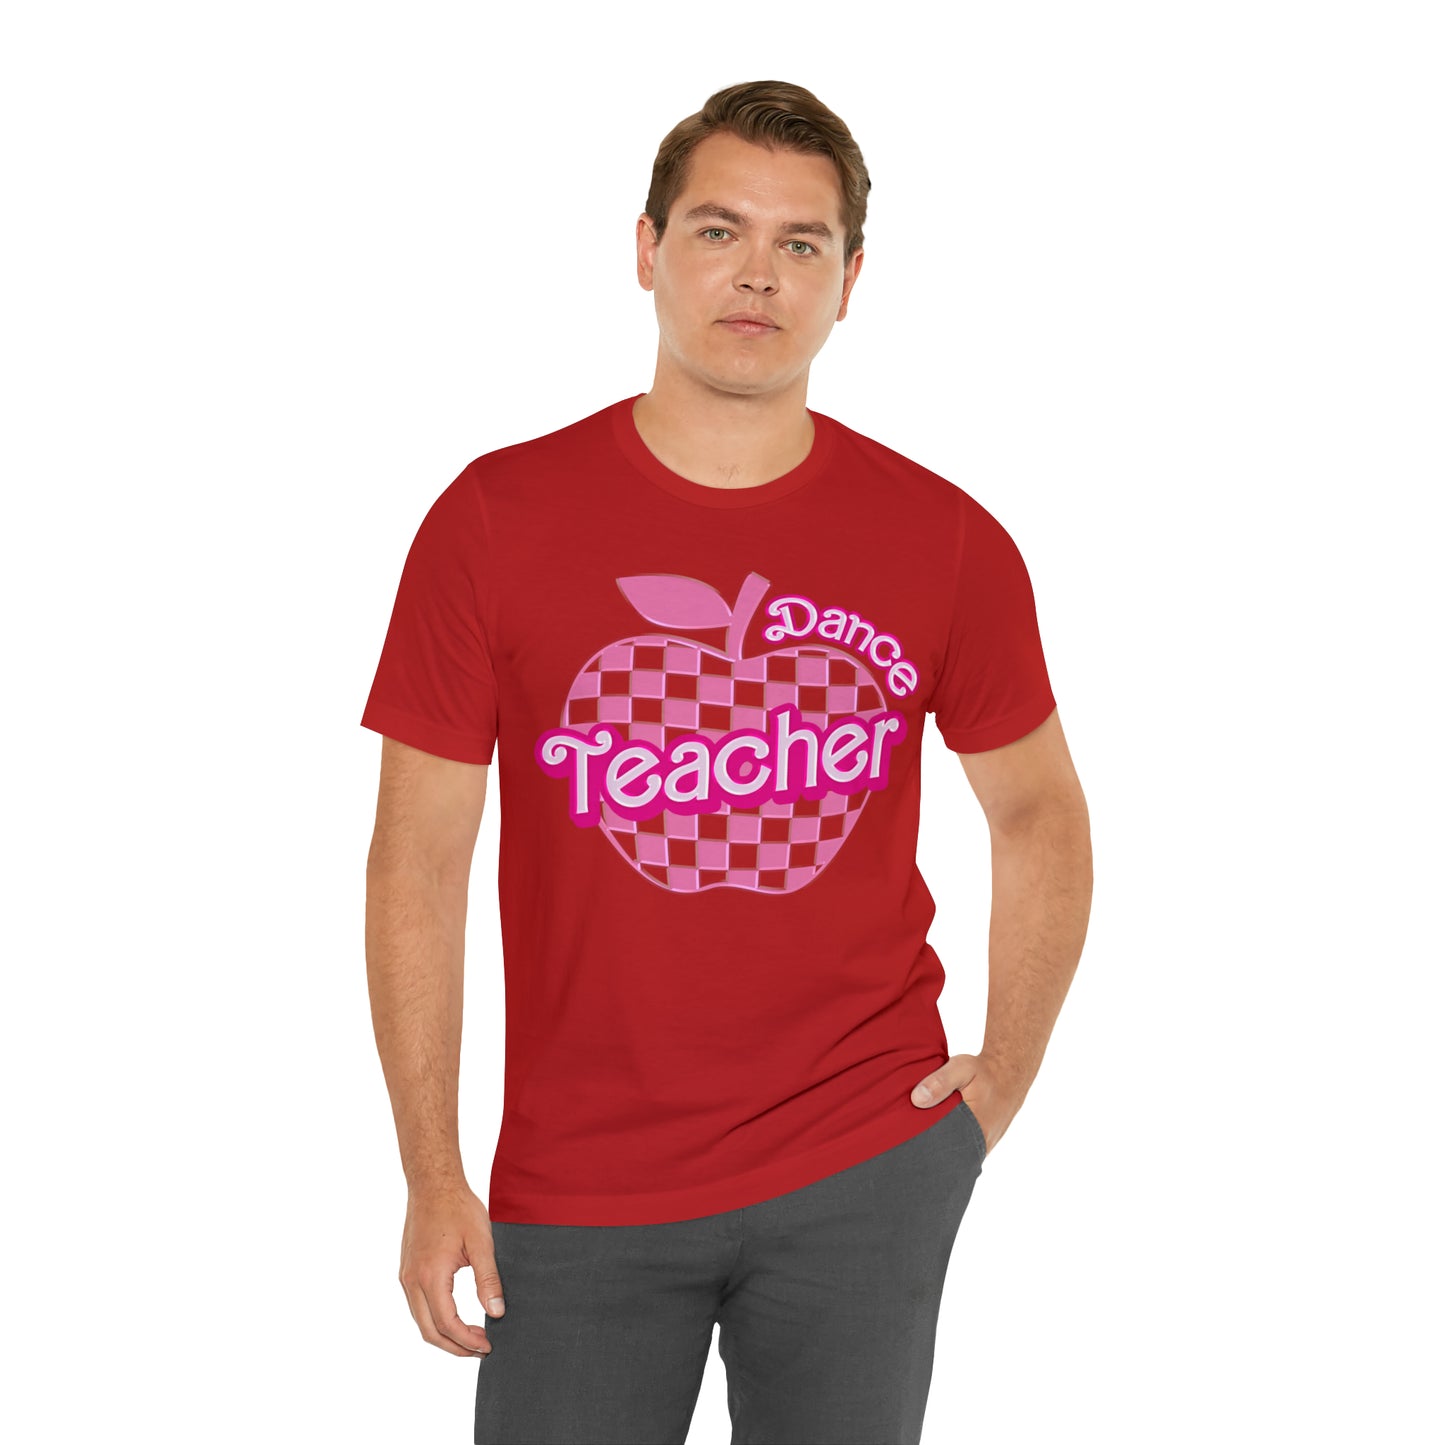 Dance Teacher Shirt, In My Teacher Era Shirt, Retro Dance Teacher Shirt, Dance Lover, Back To School Shirt, Dance Teacher Gifts, T825